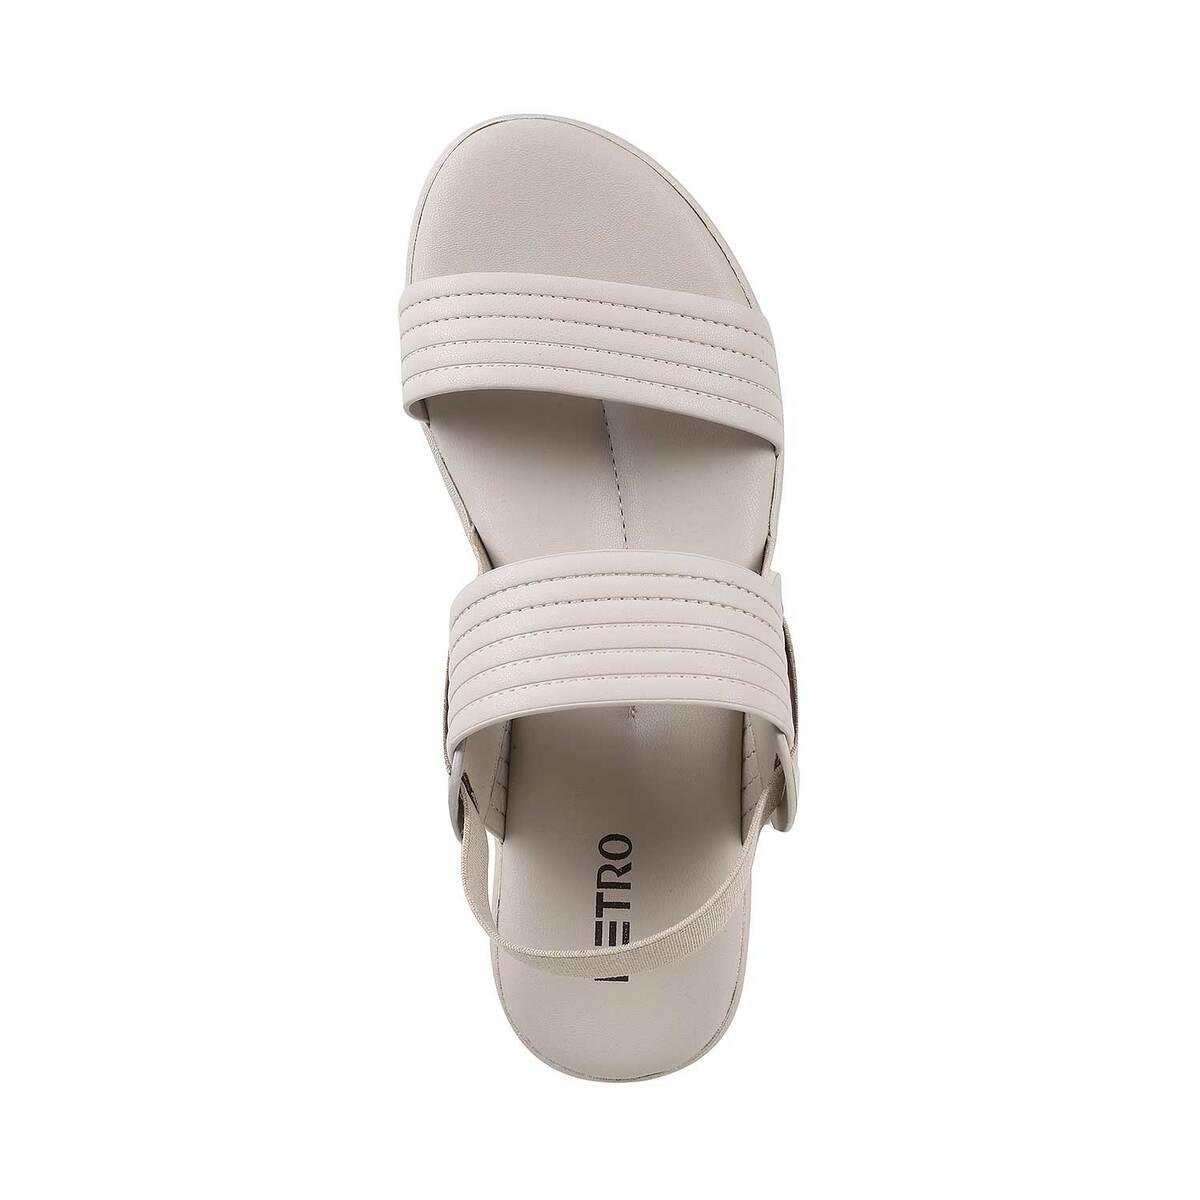 Walkaroo Kids Solid Clog Sandals - WK382 Light Grey – Walkaroo Footwear